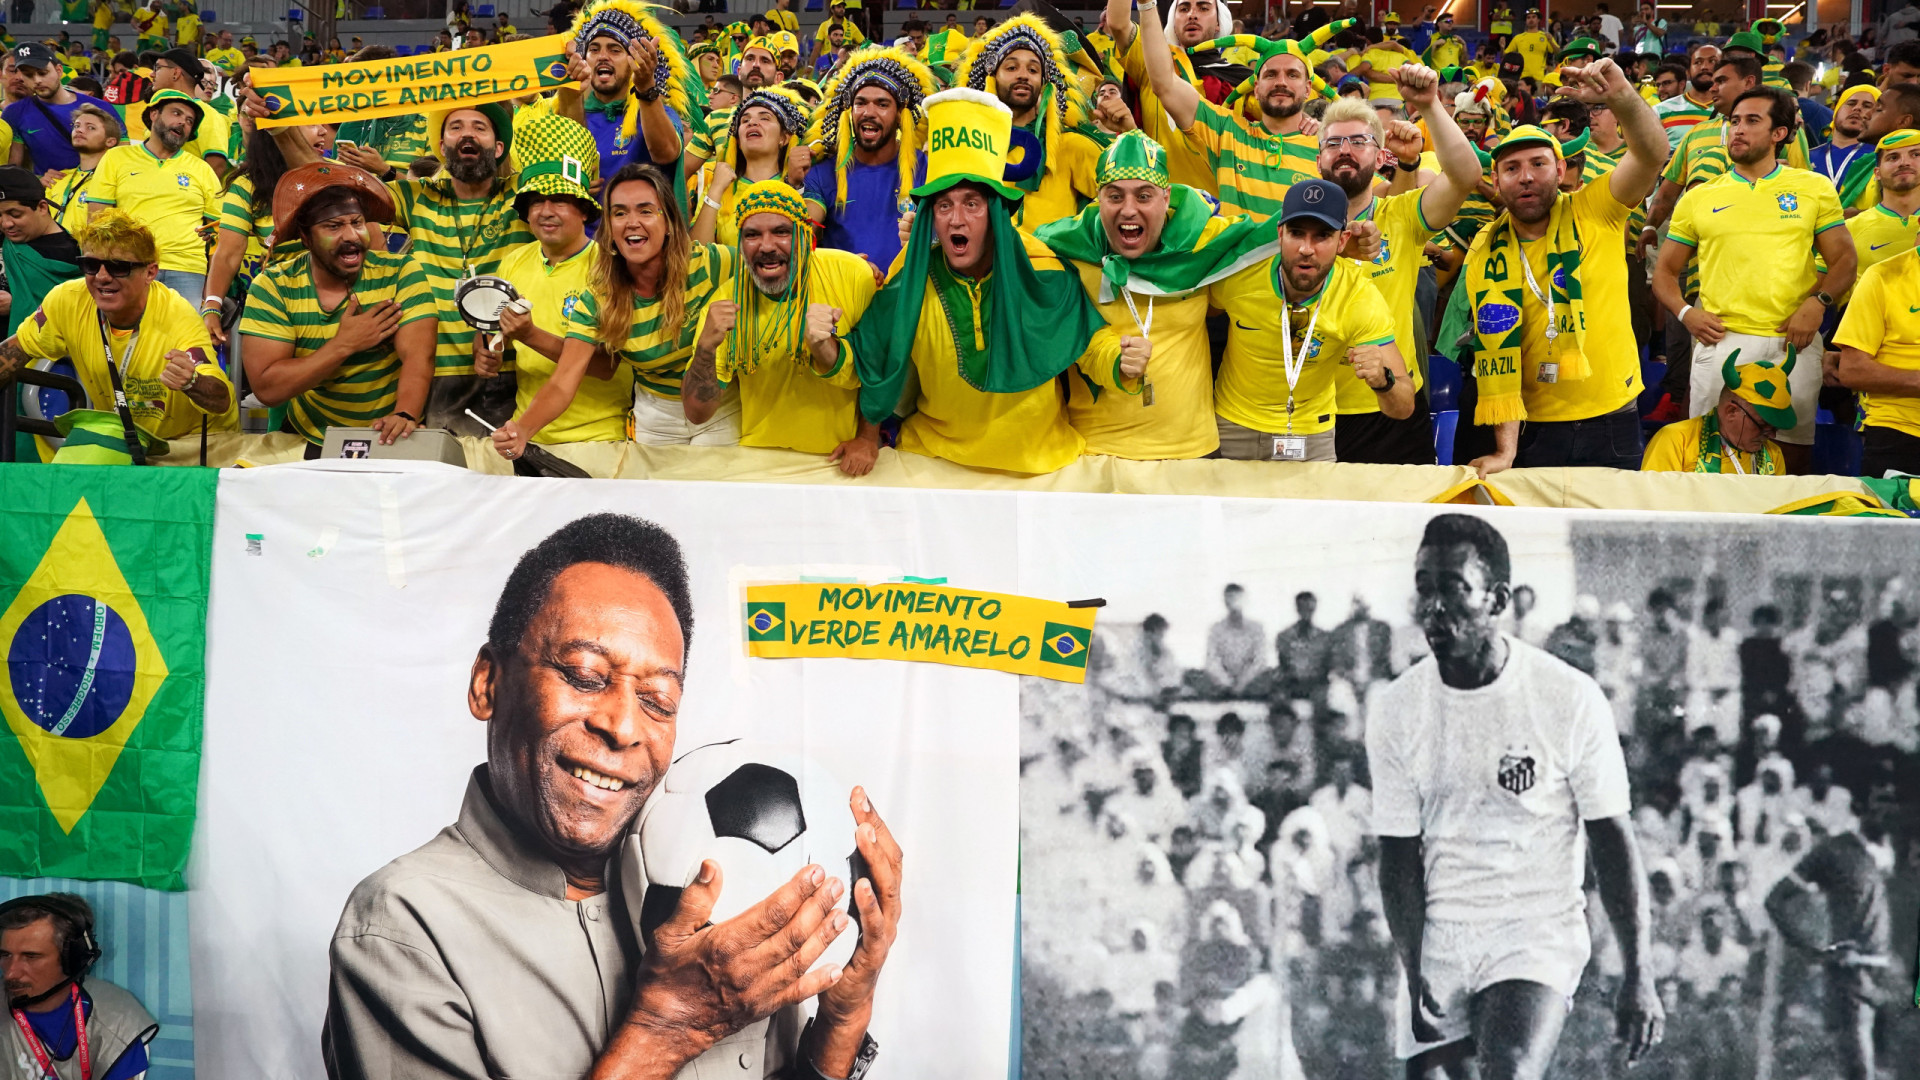 Torcida do Brasil homenageia Pelé no minuto 10 em jogo da Copa